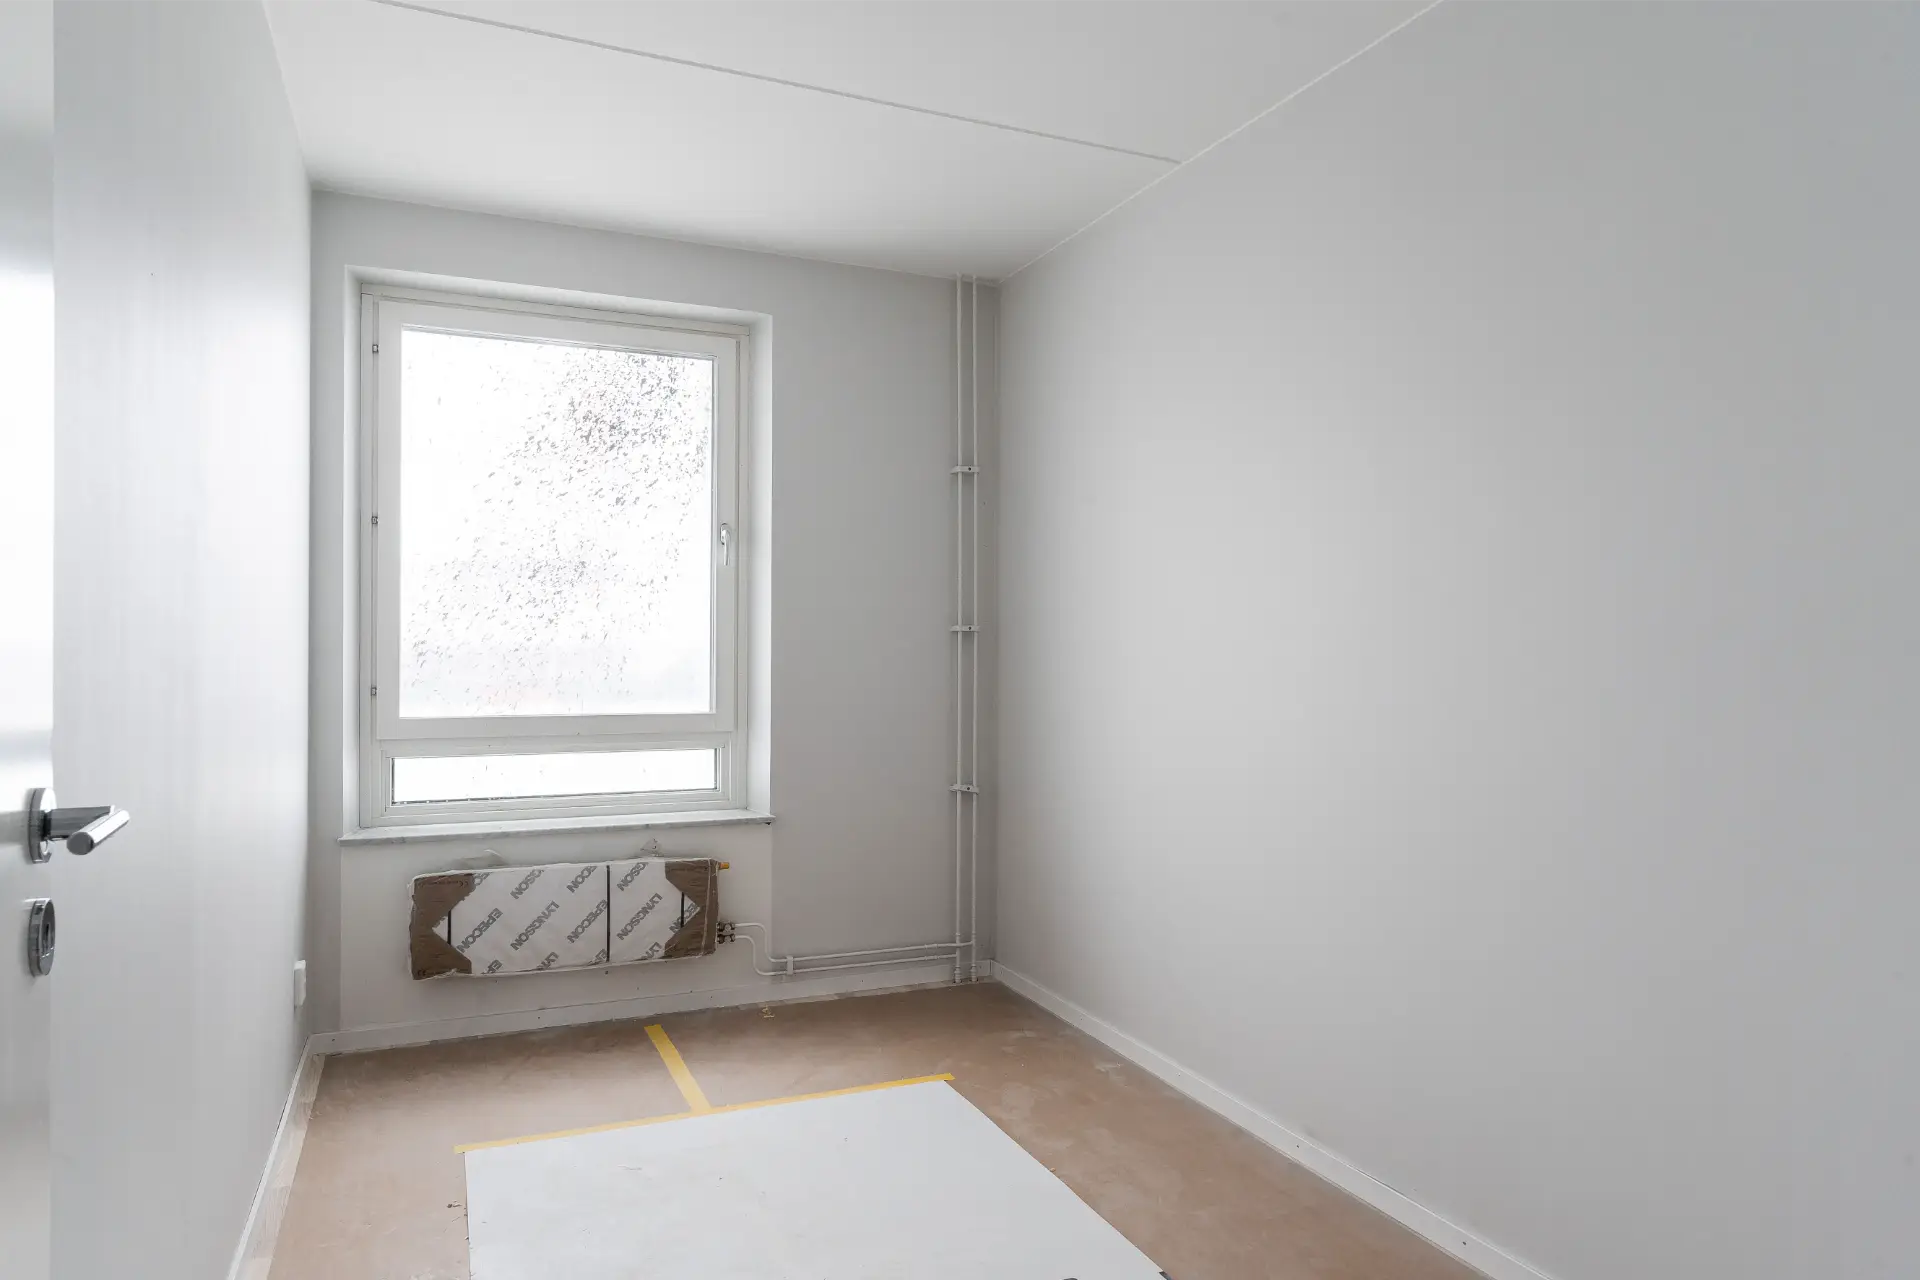 Ett minimalistiskt tomt rum med ett smutsigt fönster, ljusgrå väggar och ett emballerat element under fönstret. golvet är delvis täckt med en skyddsduk.